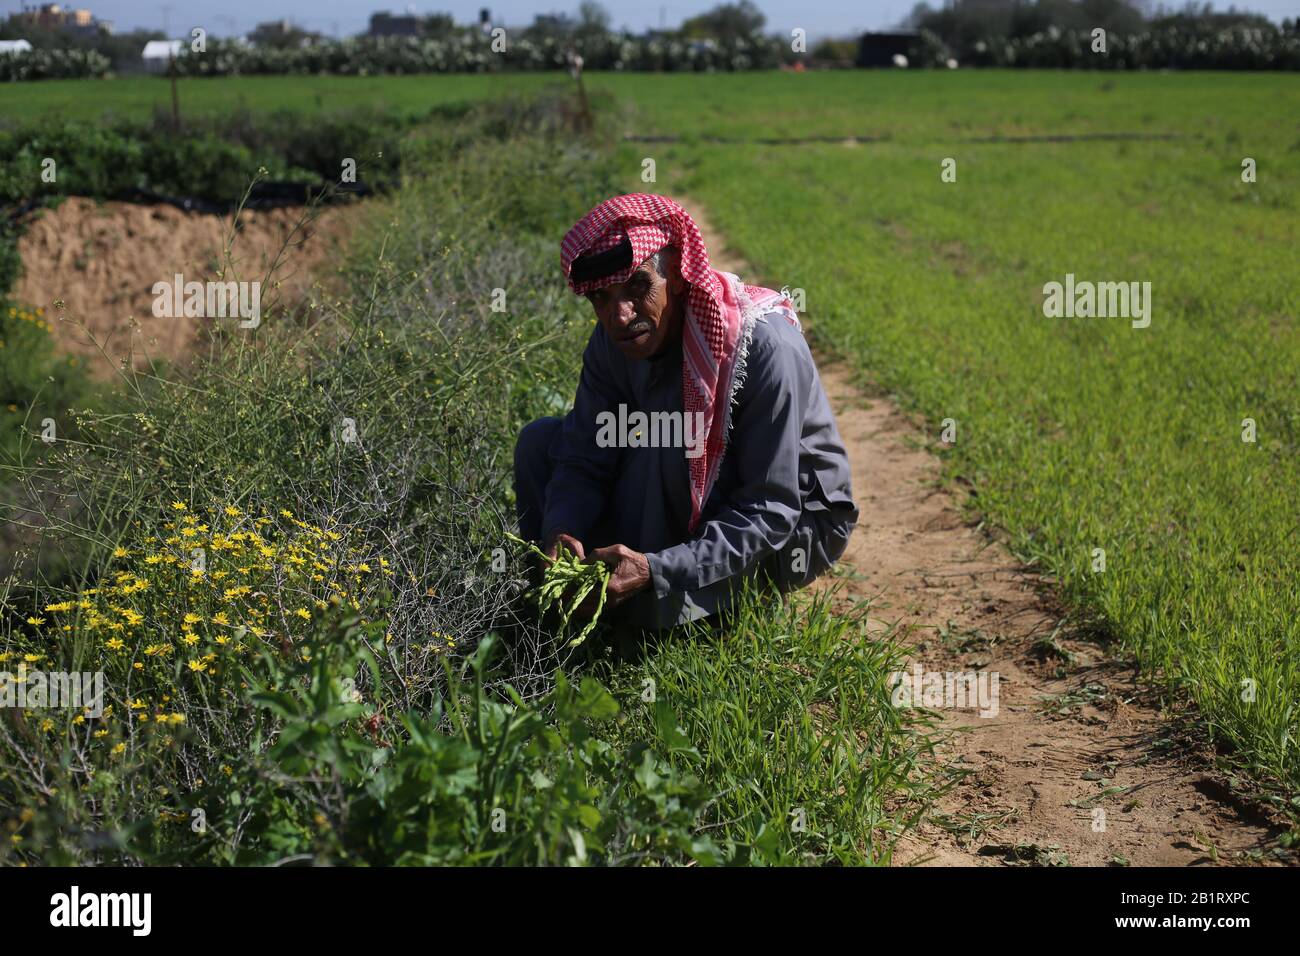 Gaza. 27th Feb, 2020. Il 27 febbraio 2020, il contadino palestinese Suleiman Qudaih raccoglie gli asparagi selvatici nella sua fattoria a est della città meridionale della striscia di Gaza di Khan Younis. Qudaih ha detto che gli asparagi selvatici possono essere trovati tra le erbe alte e le piante a lunga vita come il cactus. L'uomo, 73, cuoce gli asparagi con uova e altri piatti per assorbire il suo nutrimento. Credito: Khaled Omar/Xinhua/Alamy Live News Foto Stock